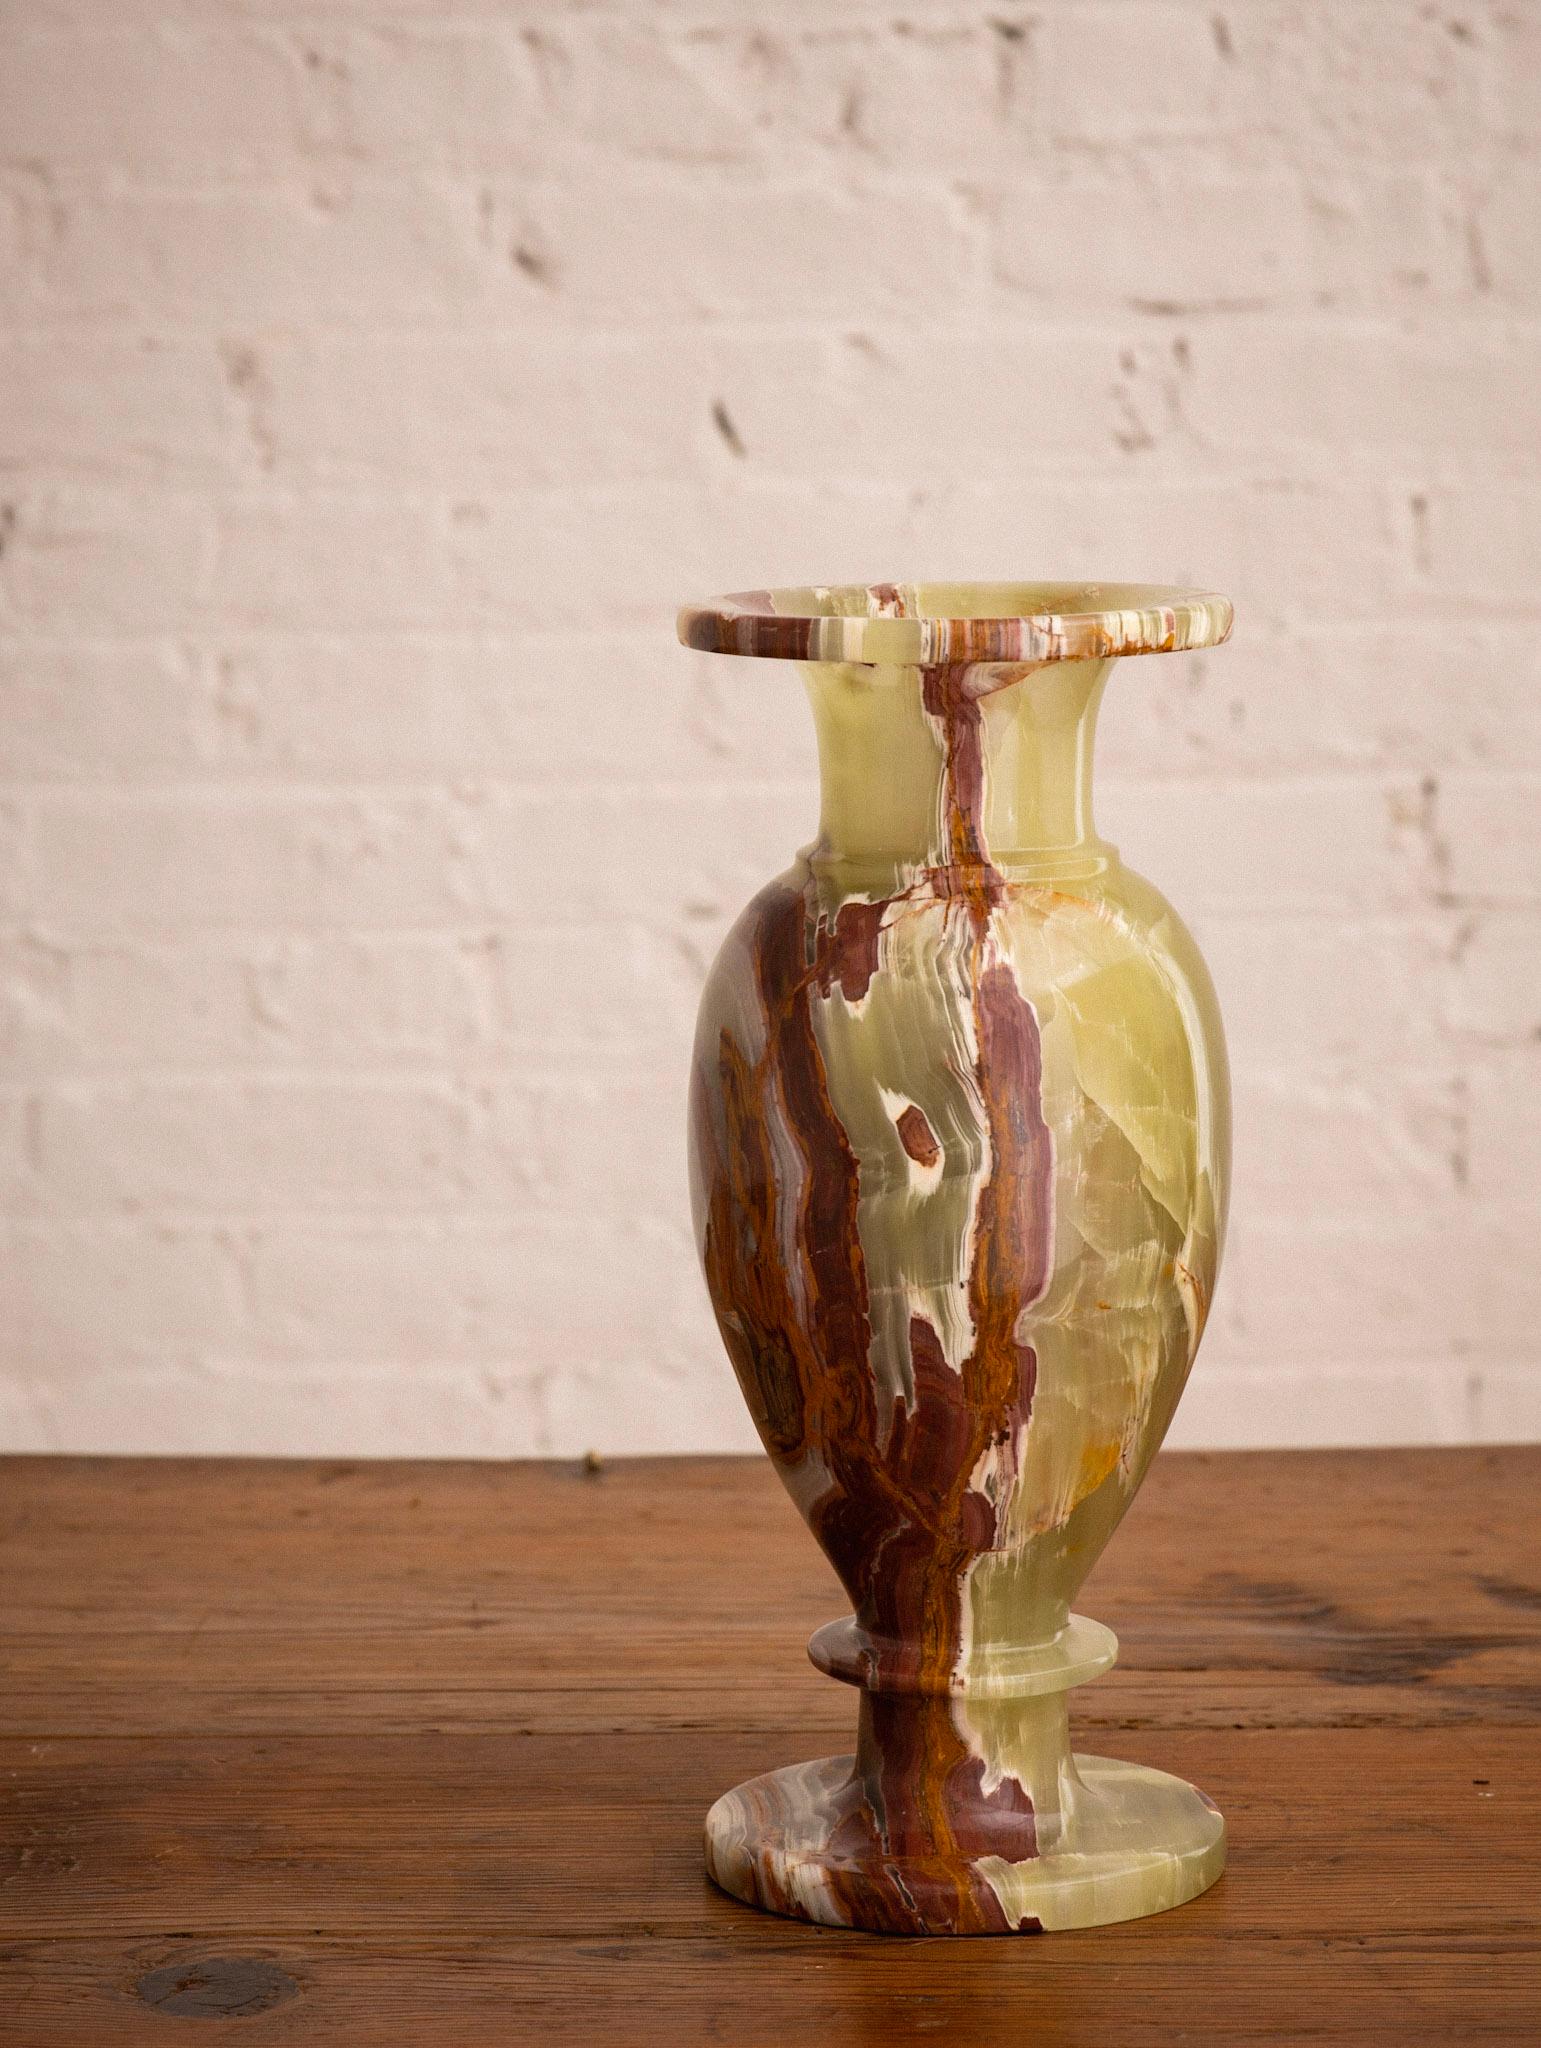 Eine klassische Vase aus massivem Onyx. Erheblich in Größe und Gewicht. Von Hand gedreht und auf Hochglanz poliert. Reichhaltige Farbvariationen von Grüntönen bis hin zu Cremetönen und Brauntönen.